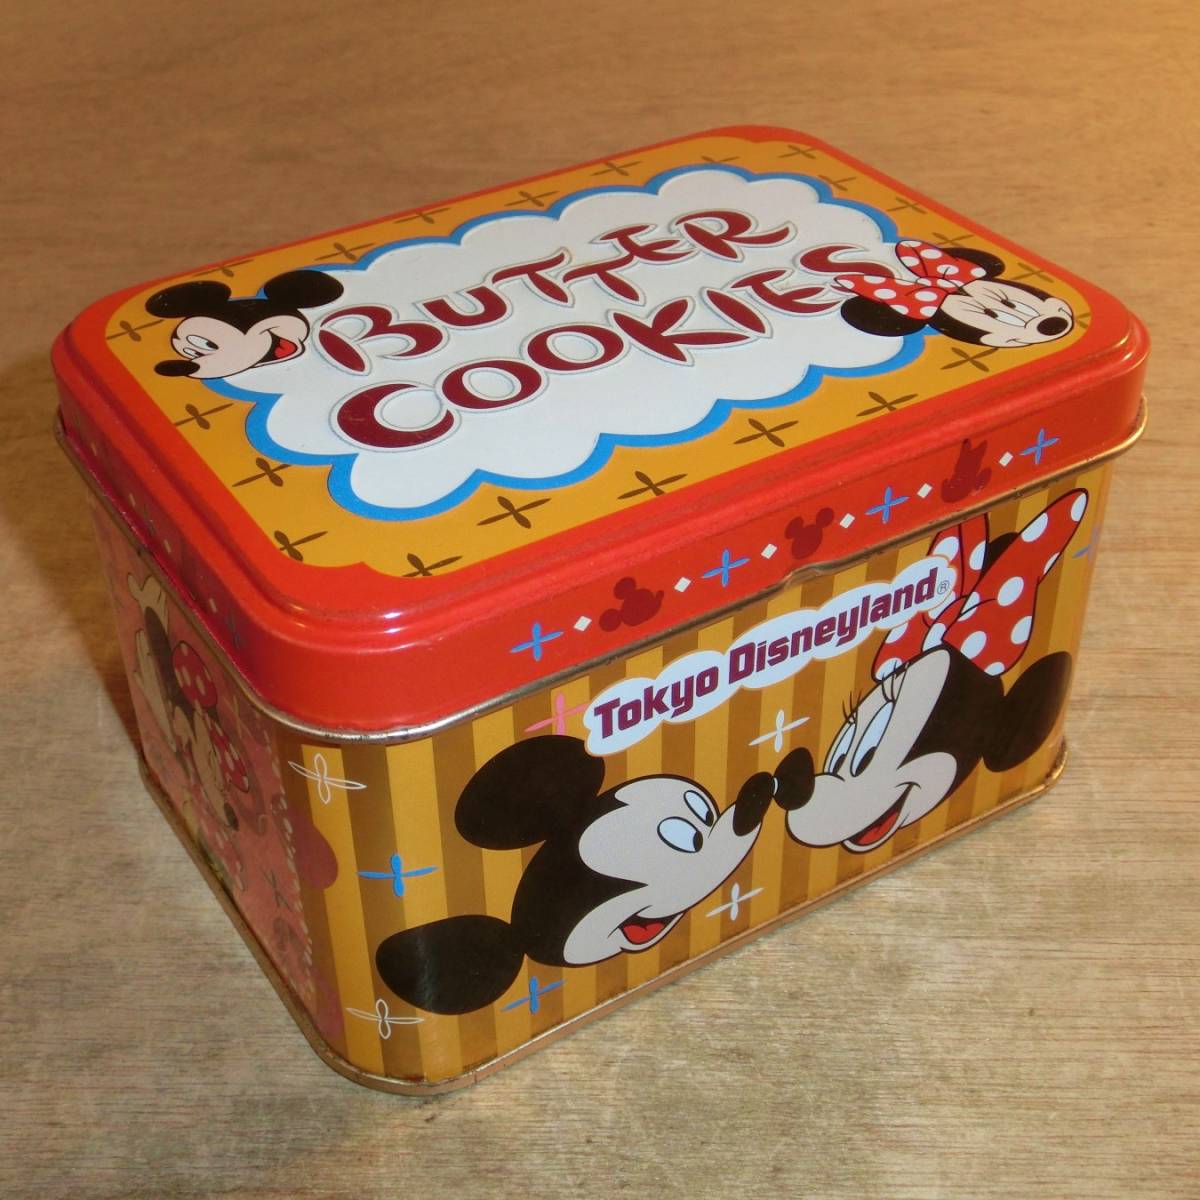 ディズニーランド バタークッキー 空き缶 ミッキーマウス ミニーマウス 小物入れ 雑貨 収納 缶 Tokyo Disneyland Mickey Mouse Product Details Yahoo Auctions Japan Proxy Bidding And Shopping Service From Japan